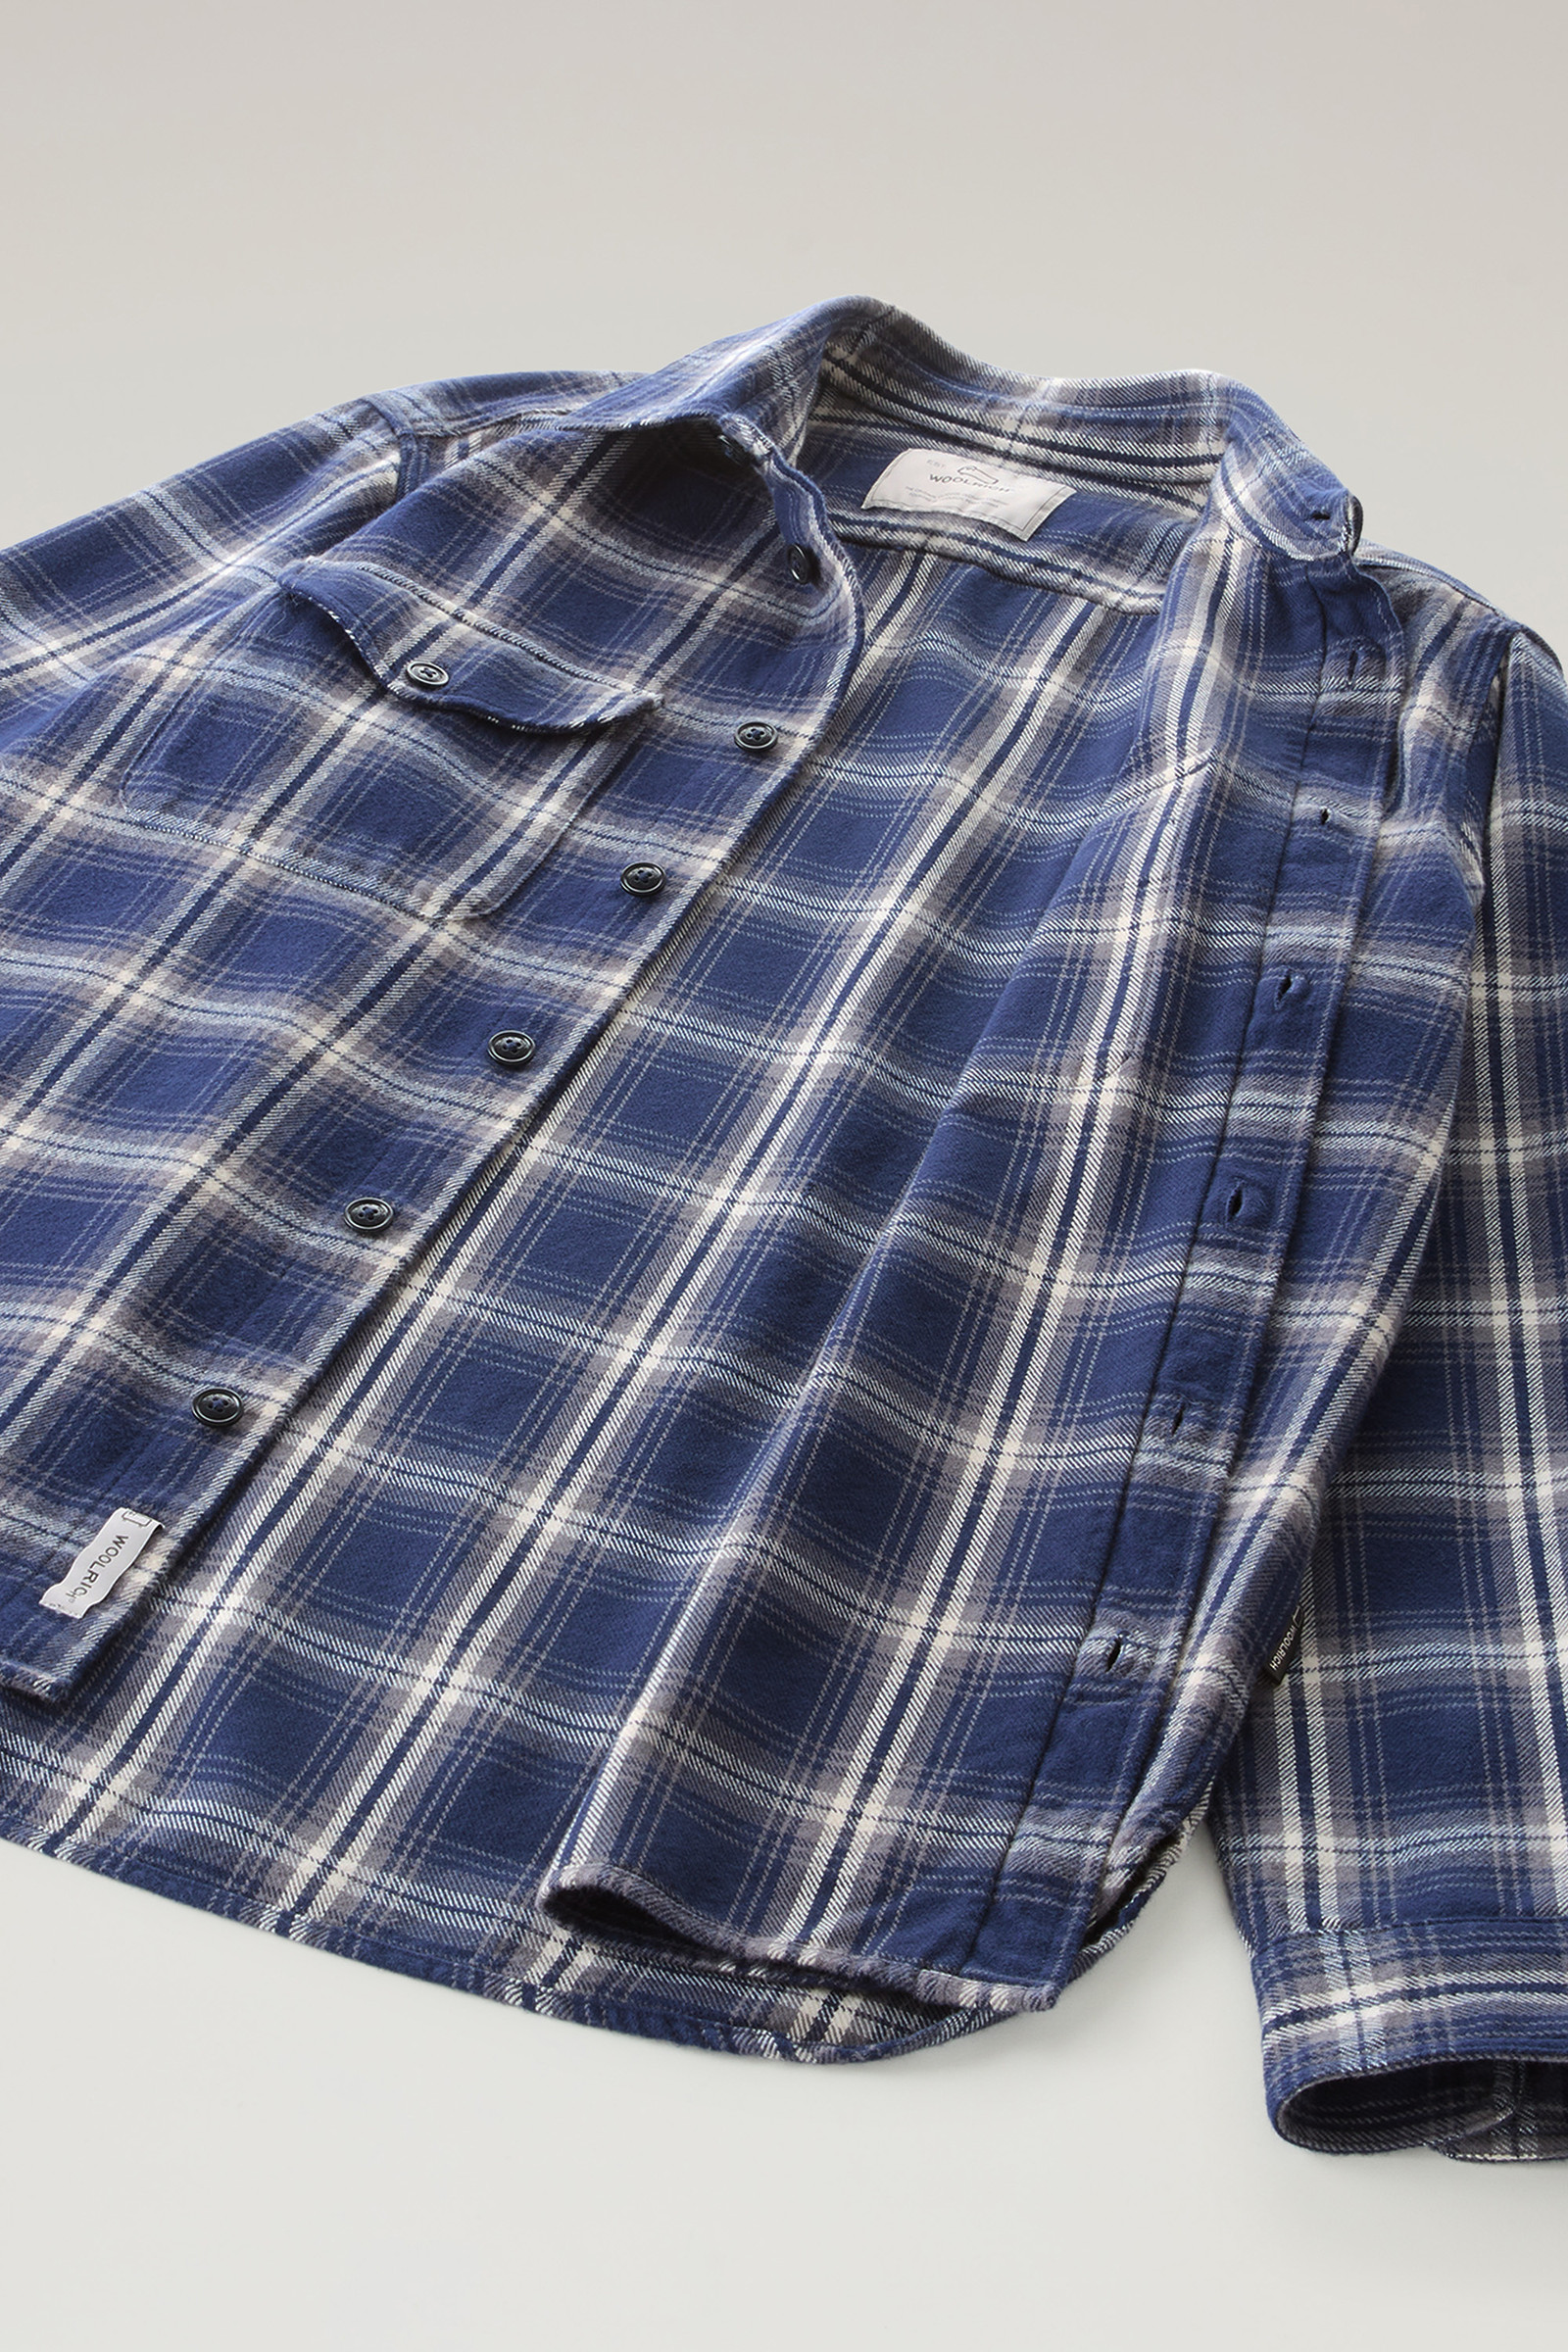 Men's Flannel Check Shirt Blue | Woolrich USA